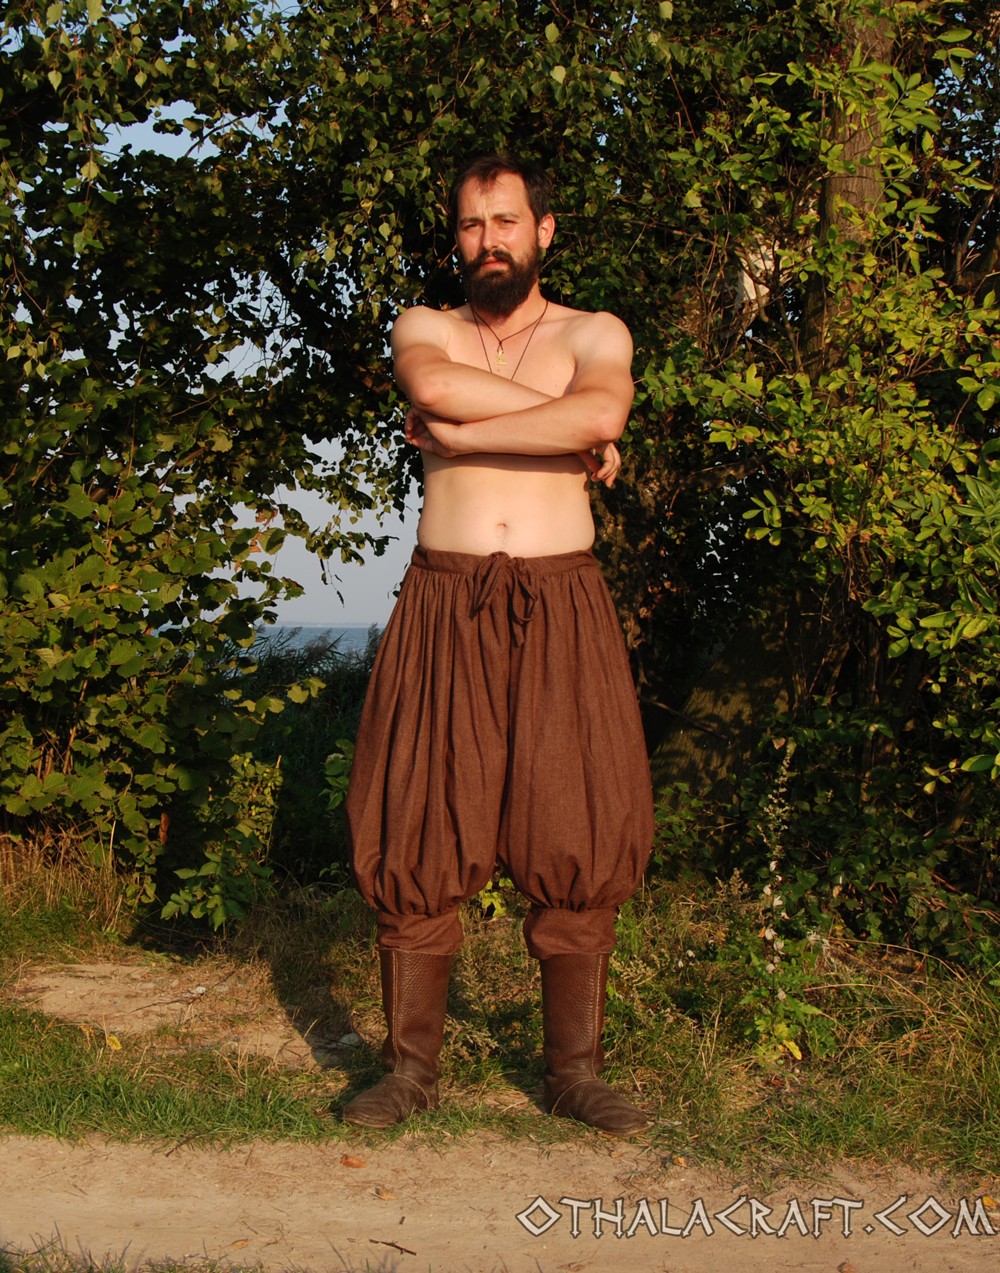 Rus Viking trousers from dark brown wool - OthalaCraft